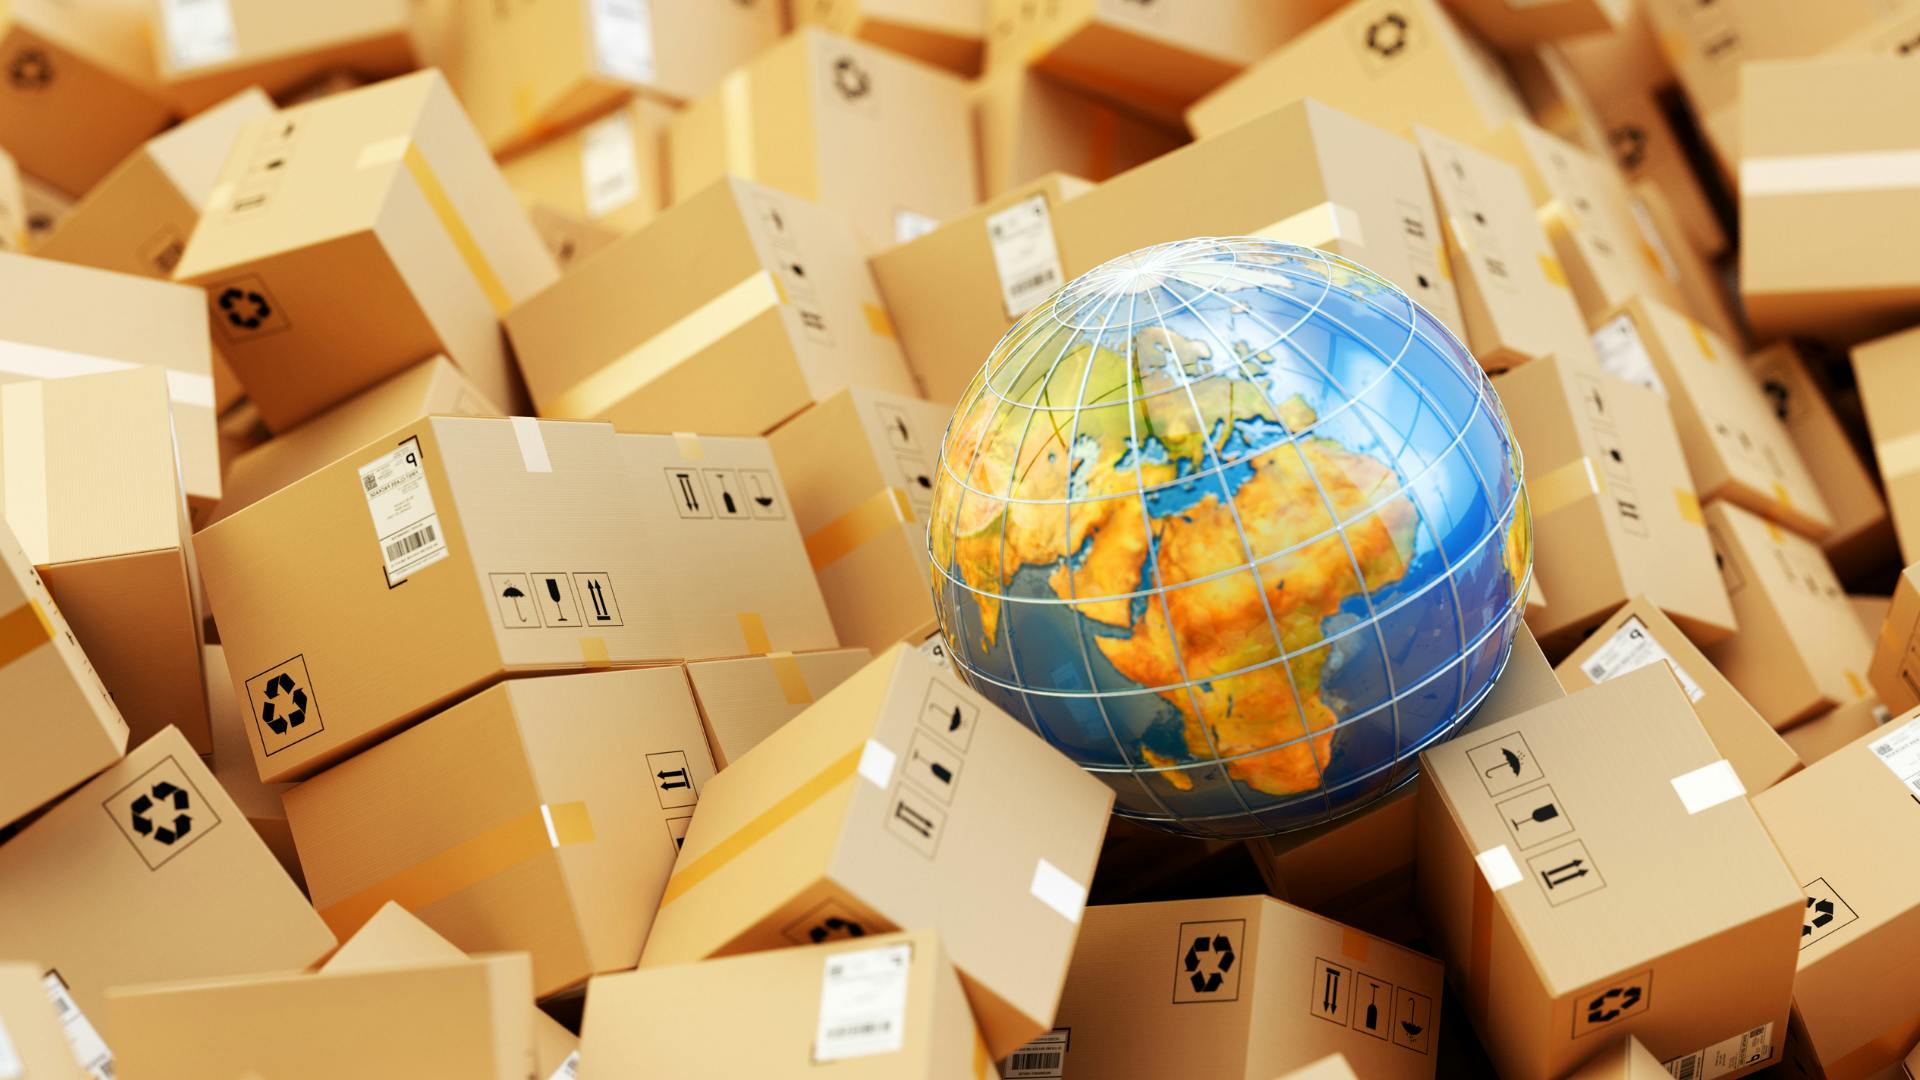 Worldwide, we see increasing shipment volumes